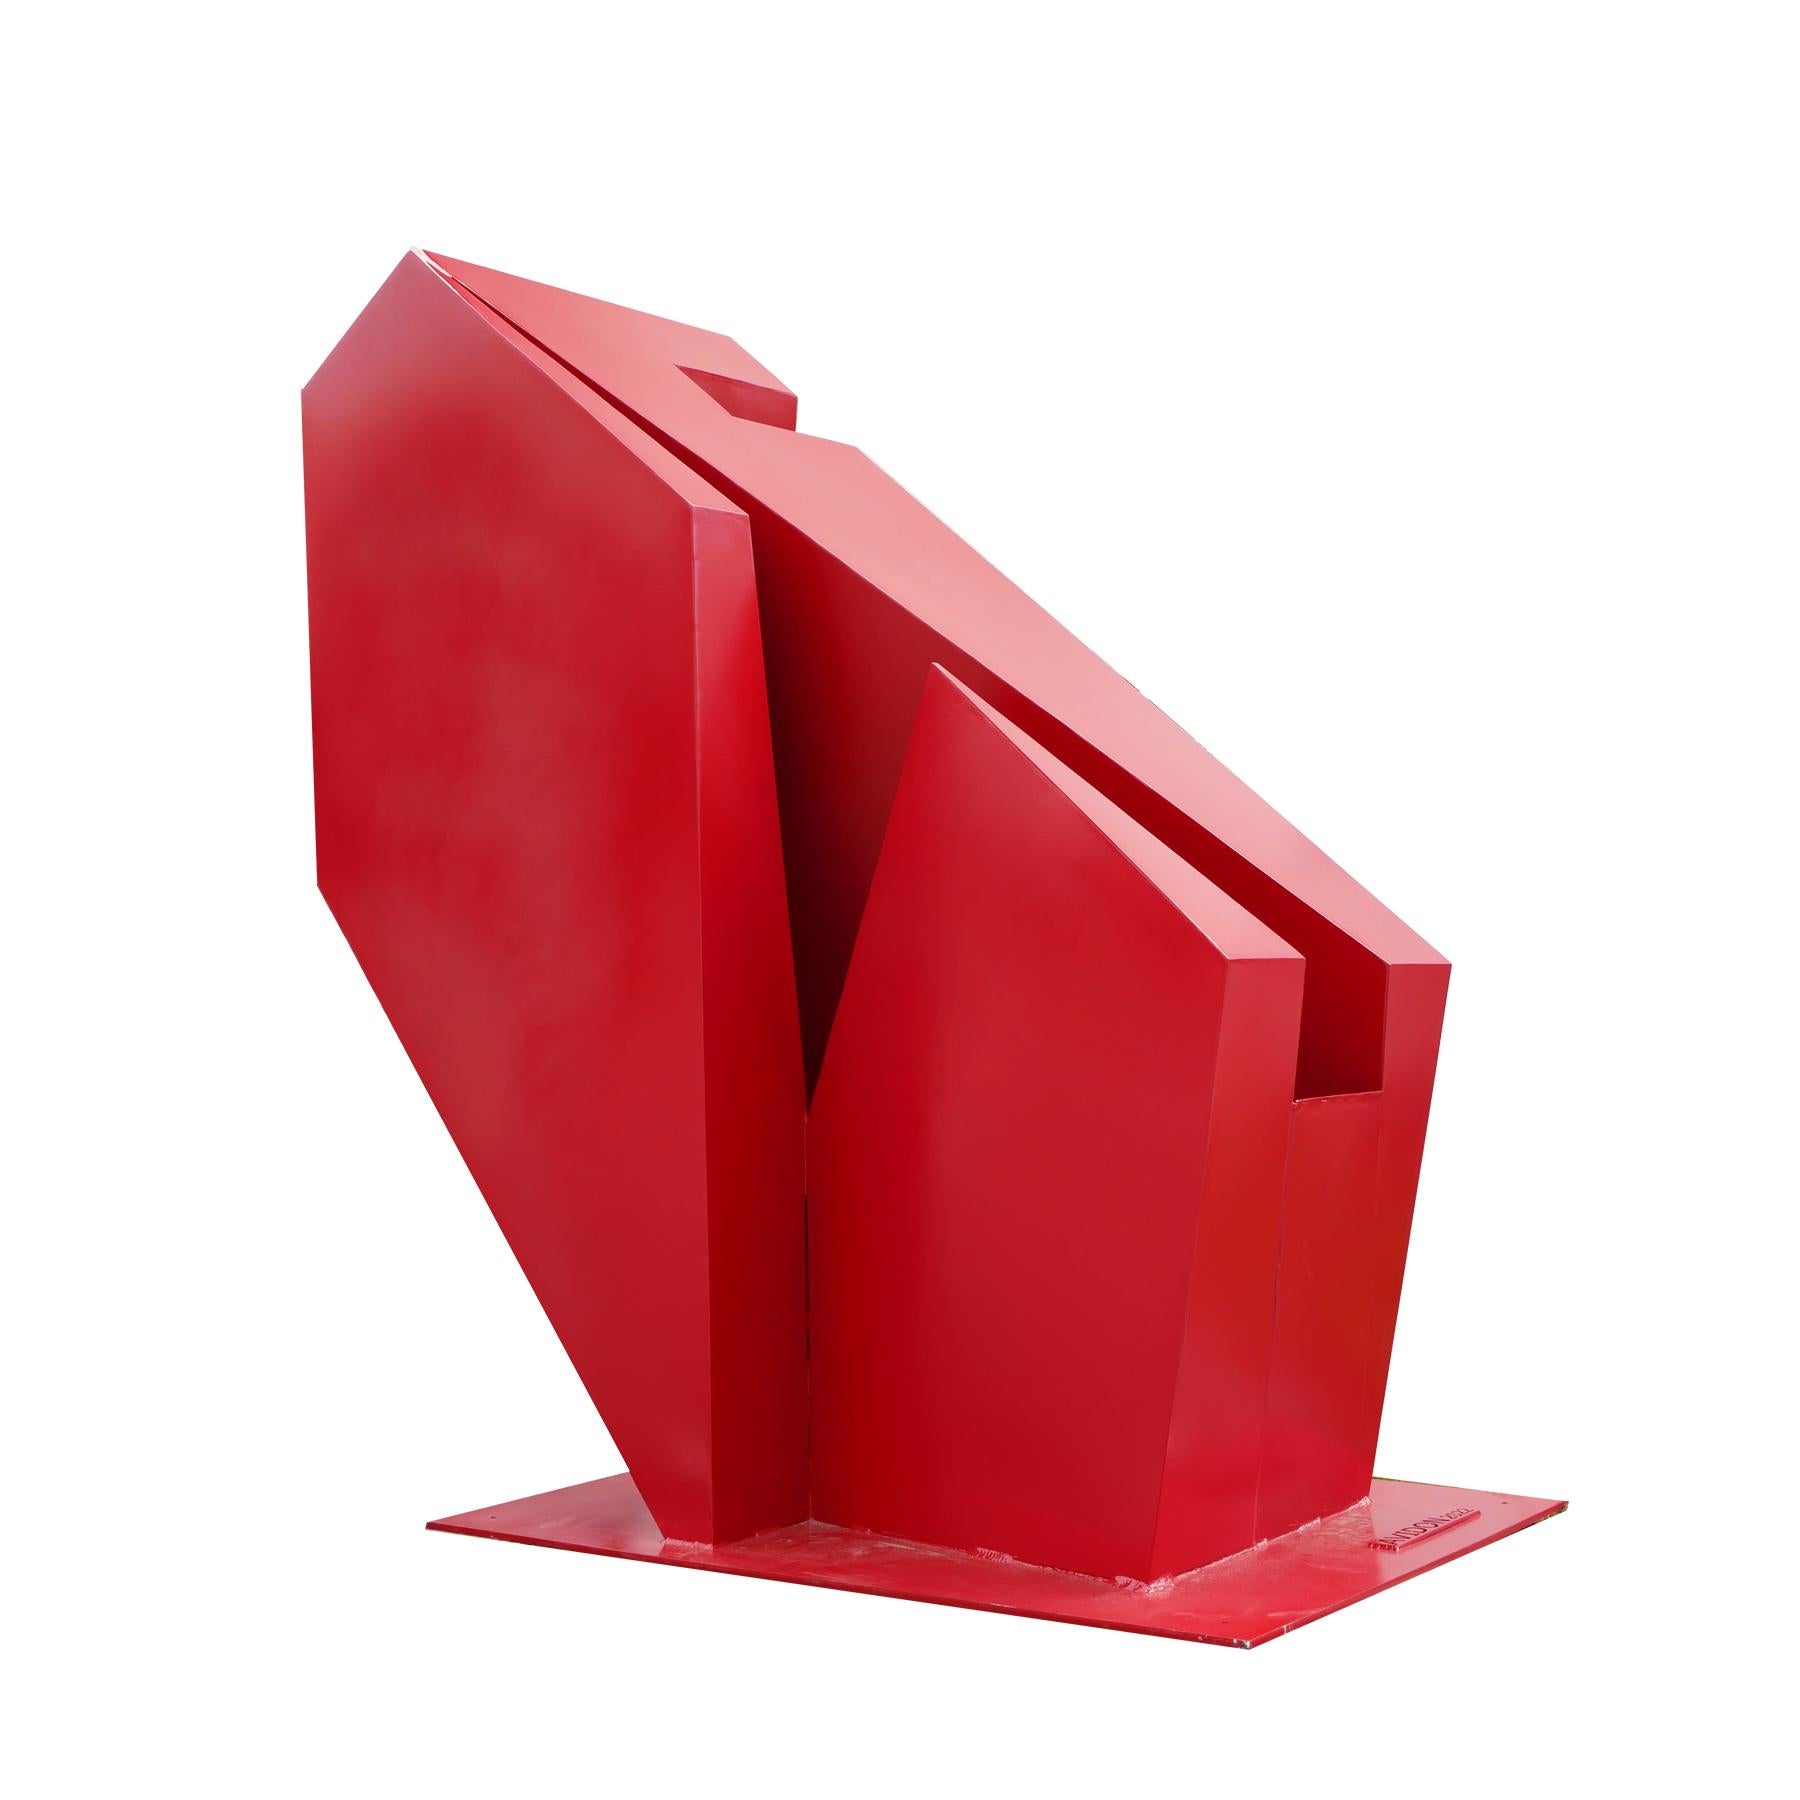 Grande sculpture d'extérieur géométrique rouge contemporaine  - Contemporain Sculpture par Reeves Art and Design